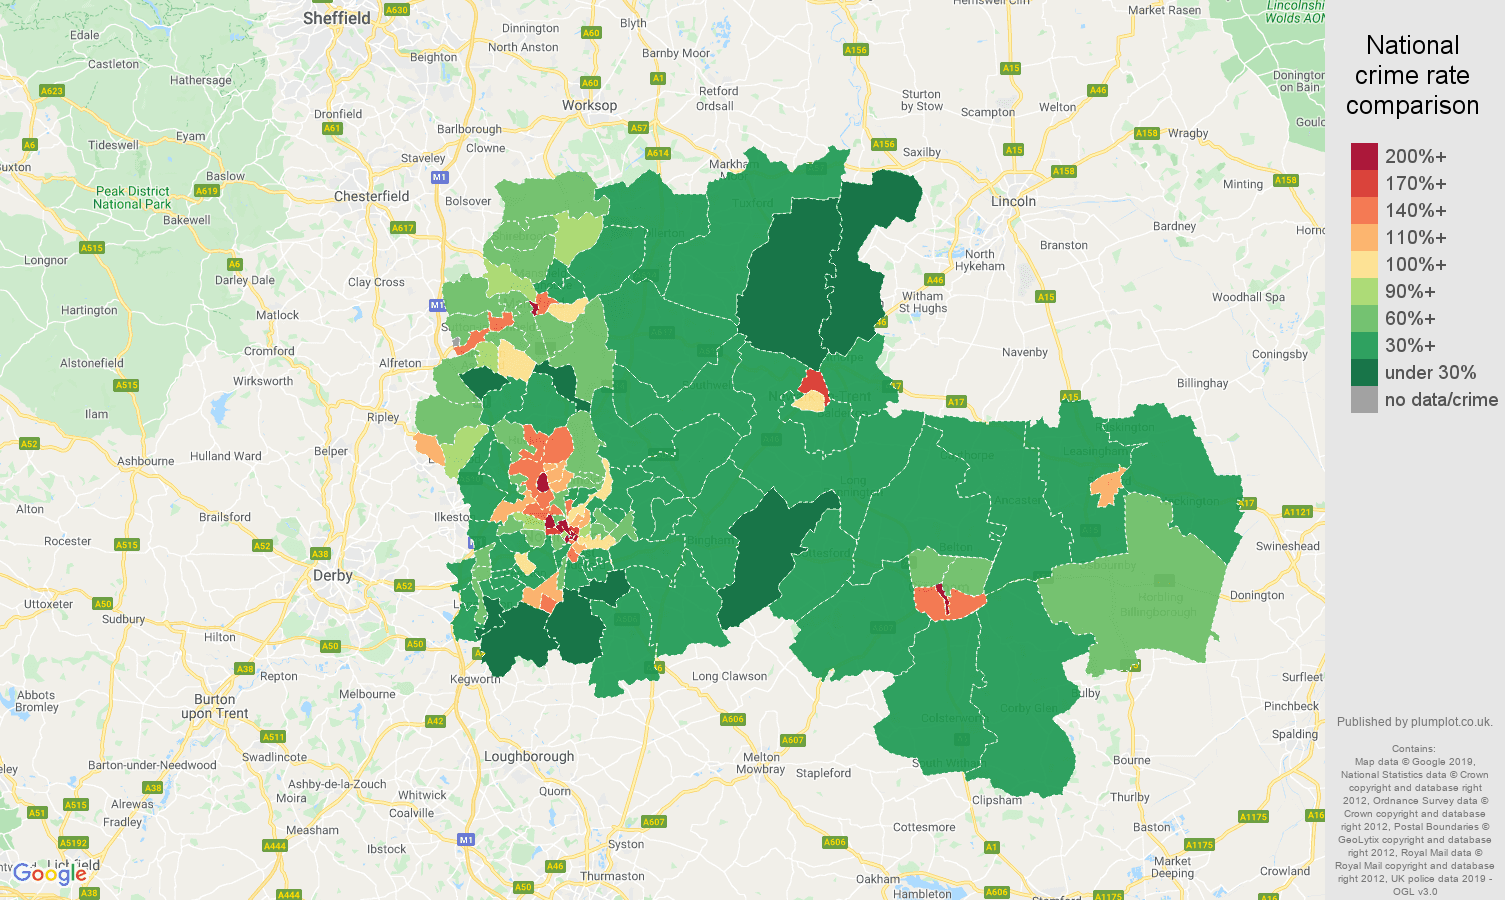 Nottingham public order crime rate comparison map